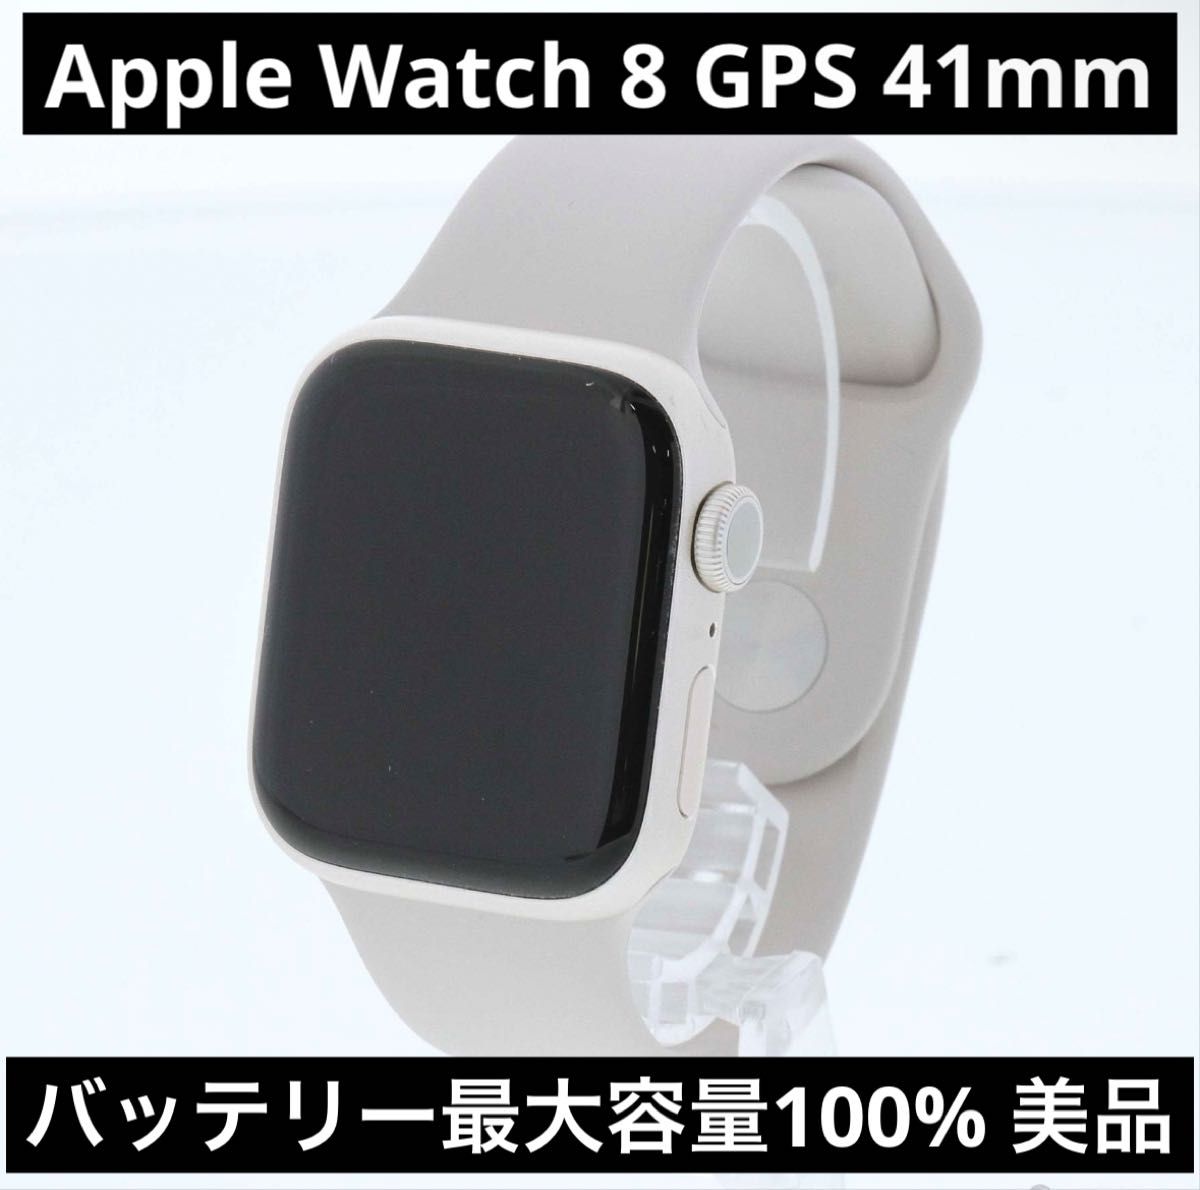 Apple Watch 8 GPSモデル 41mm アルミニウム シルバー